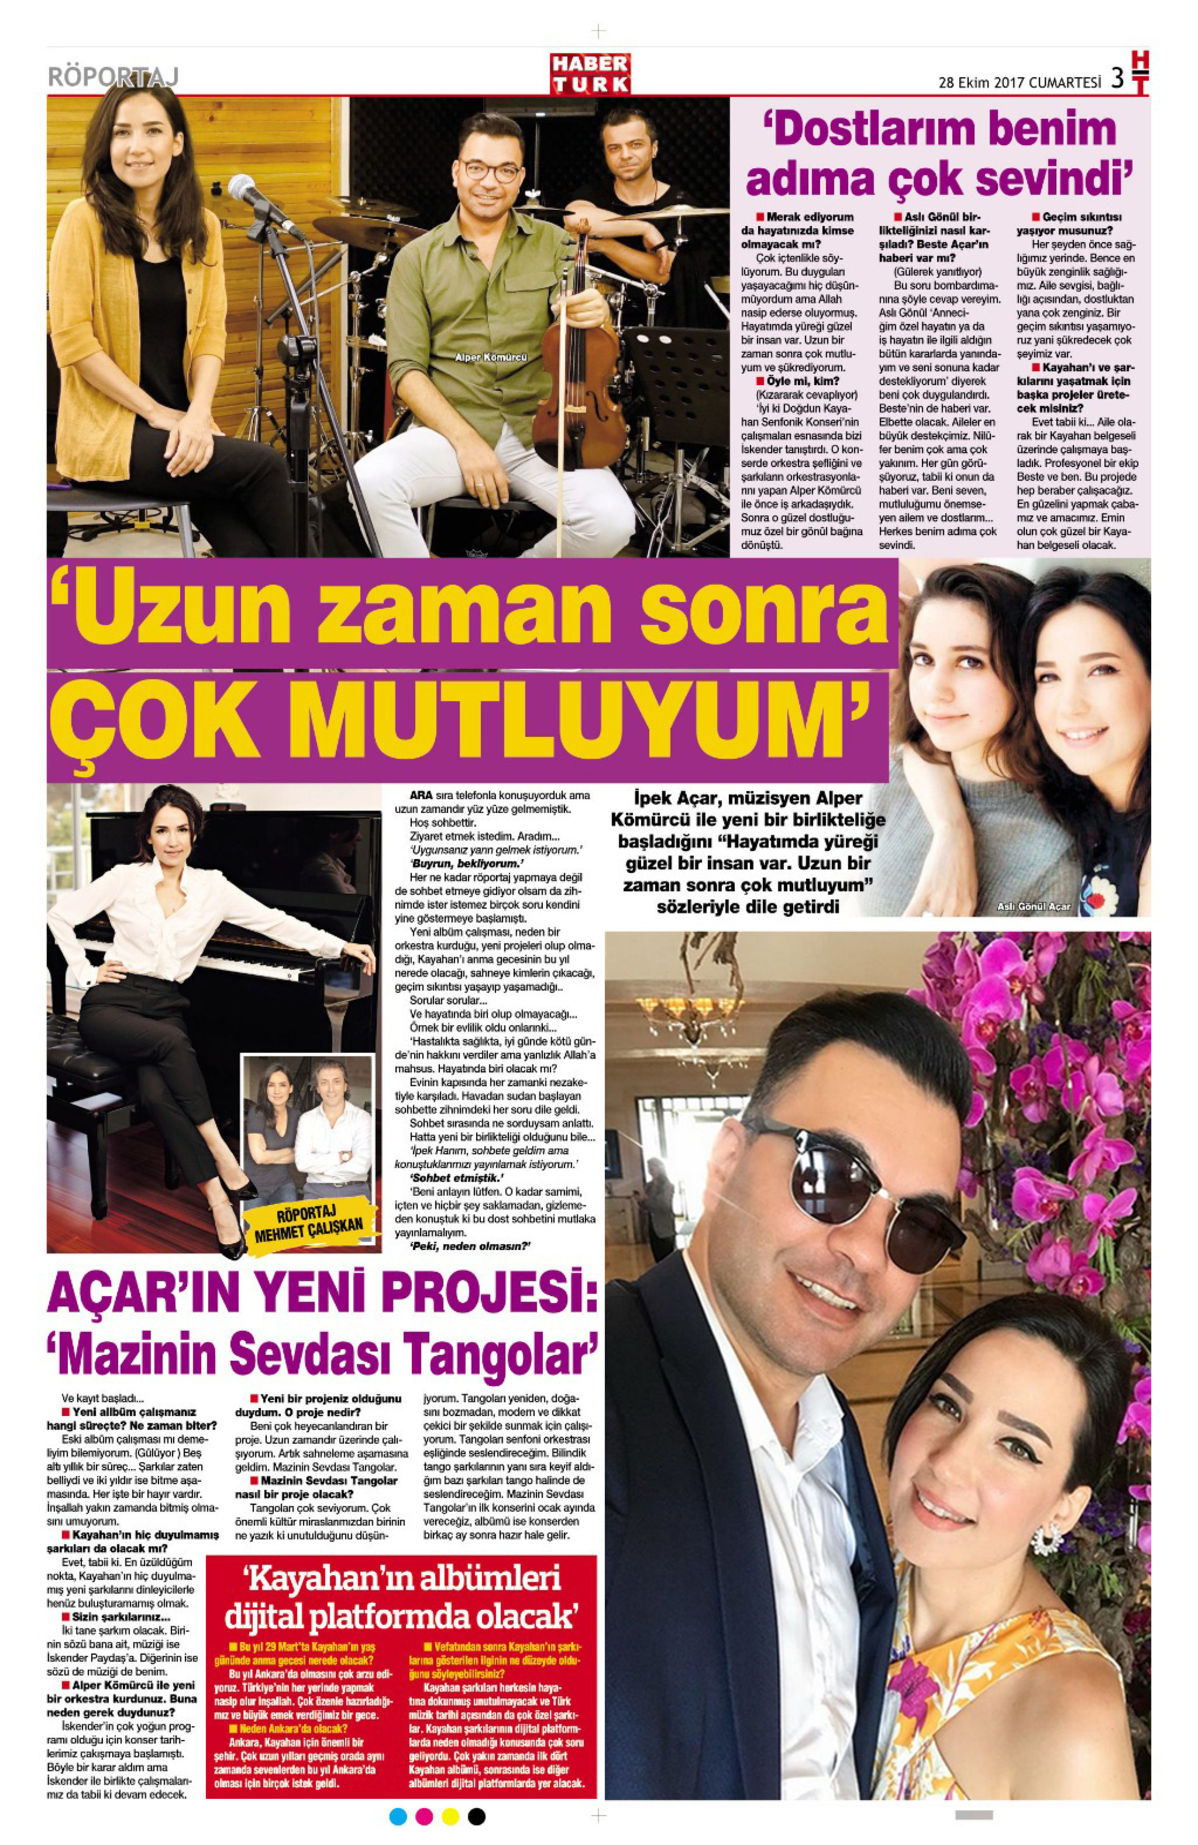 İpek Açar ile yaptığım o röportaj, 28 Ekim 2017'de Habertürk HT Magazin'de yayımlandı. 